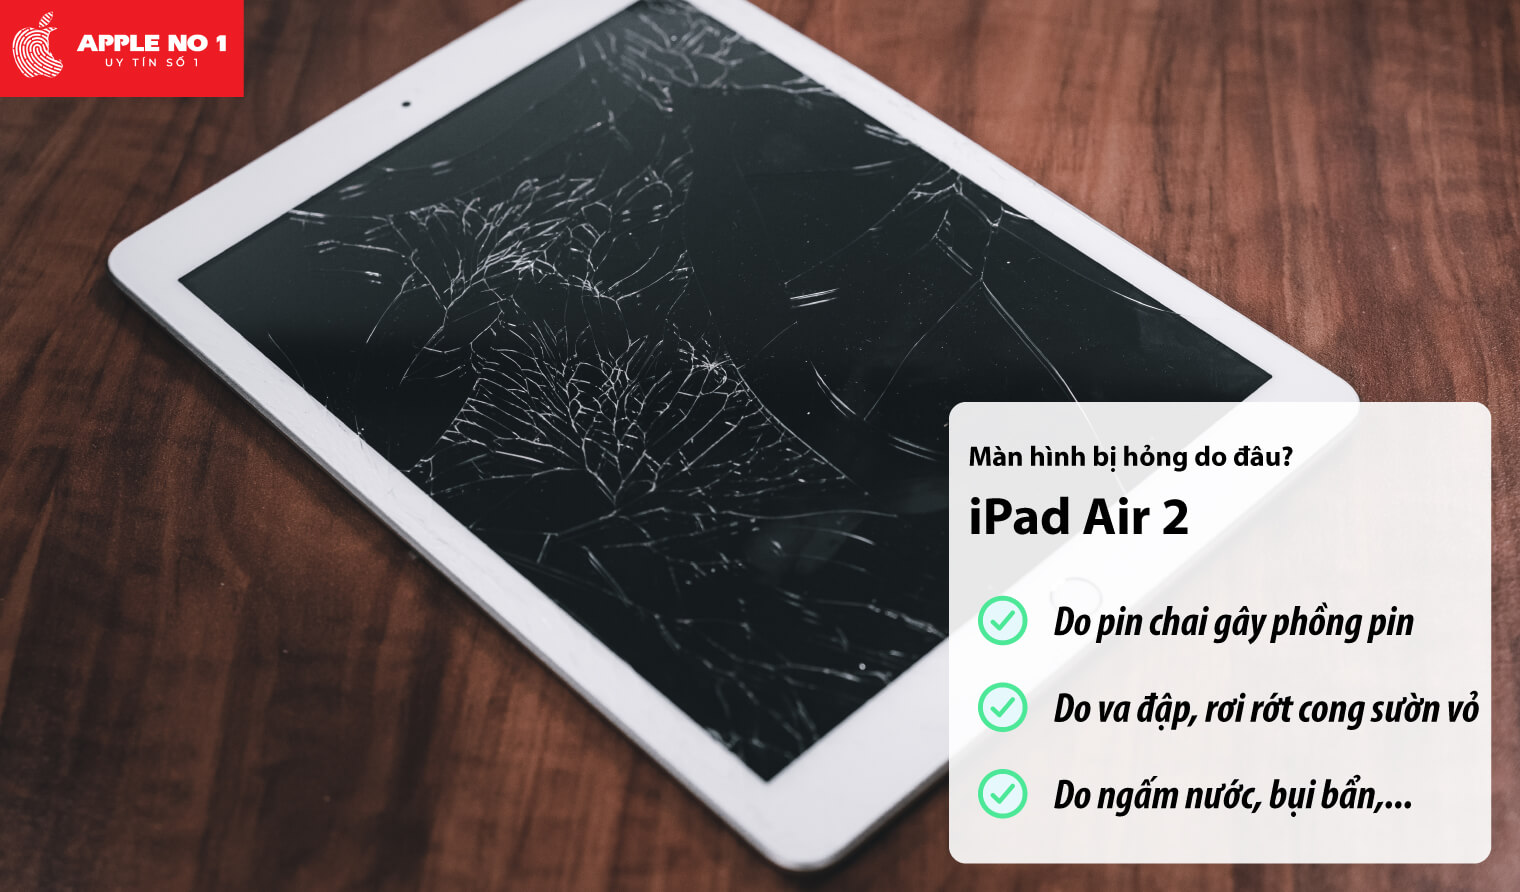 Màn hình iPad air 2 bị hỏng do đâu?